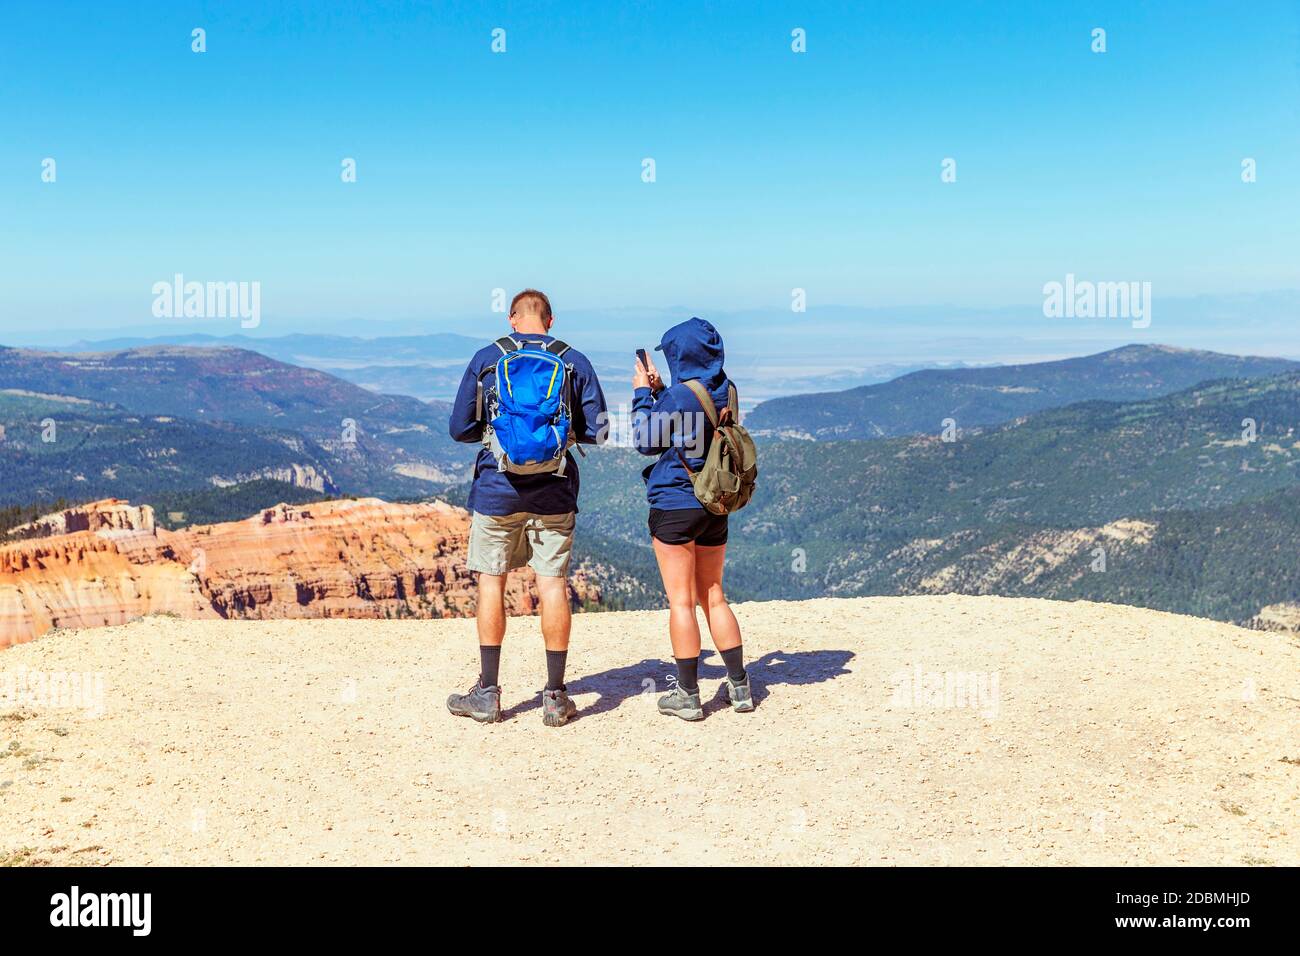 Una coppia gode della vista panoramica del Cedar Breaks National Monument, un monumento nazionale degli Stati Uniti situato nello stato dello Utah, vicino a Cedar City. Cedro Fr Foto Stock